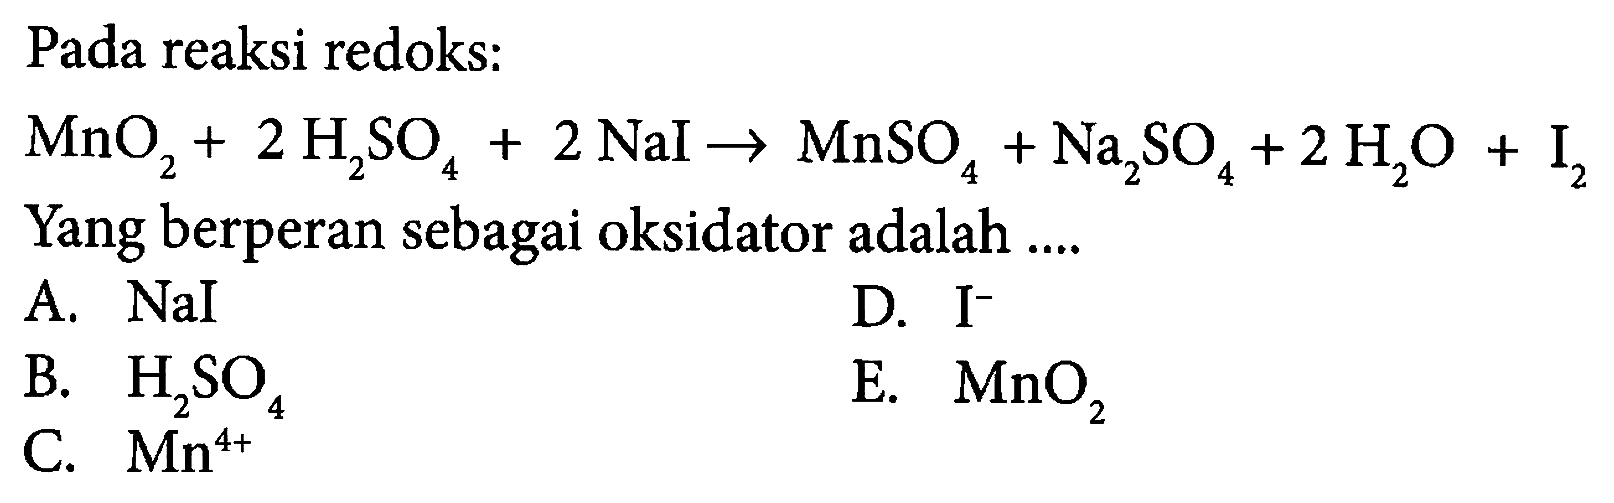 Pada reaksi redoks: MnO2+2H2SO4+2NaI -> MnSO4+Na2SO4+2H2O+I2 Yang berperan sebagai oksidator adalah .... A. NaI B. H2SO4 C. Mn^4+ D. I^- E. MnO2 